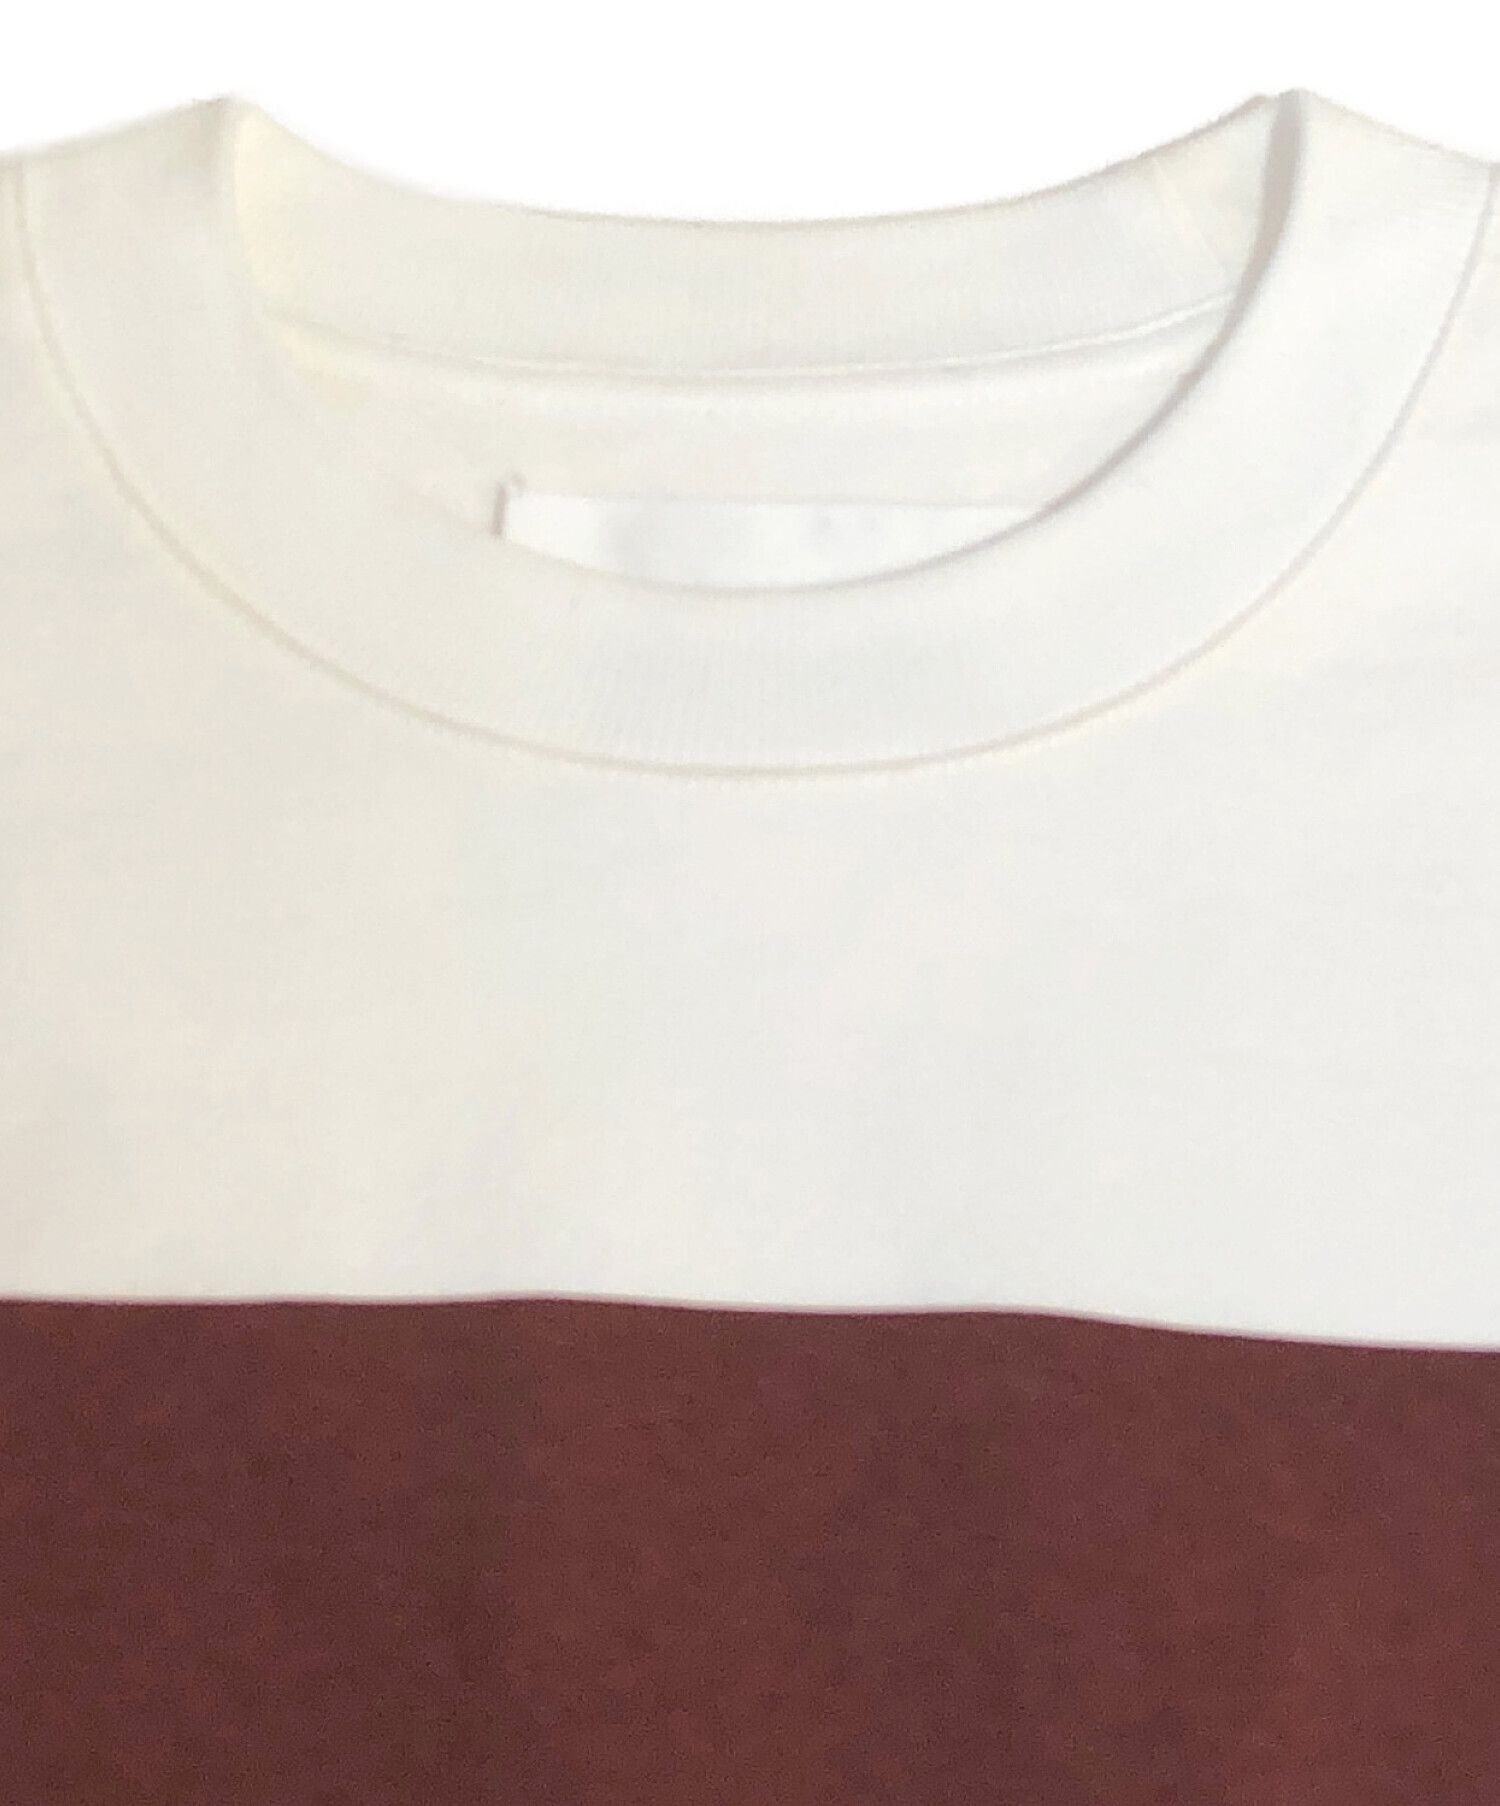 新品未使用JIL SANDERメンズ／NEVER FADE AWAY Tシャツ Tシャツ/カットソー(半袖/袖なし) 割引プラン